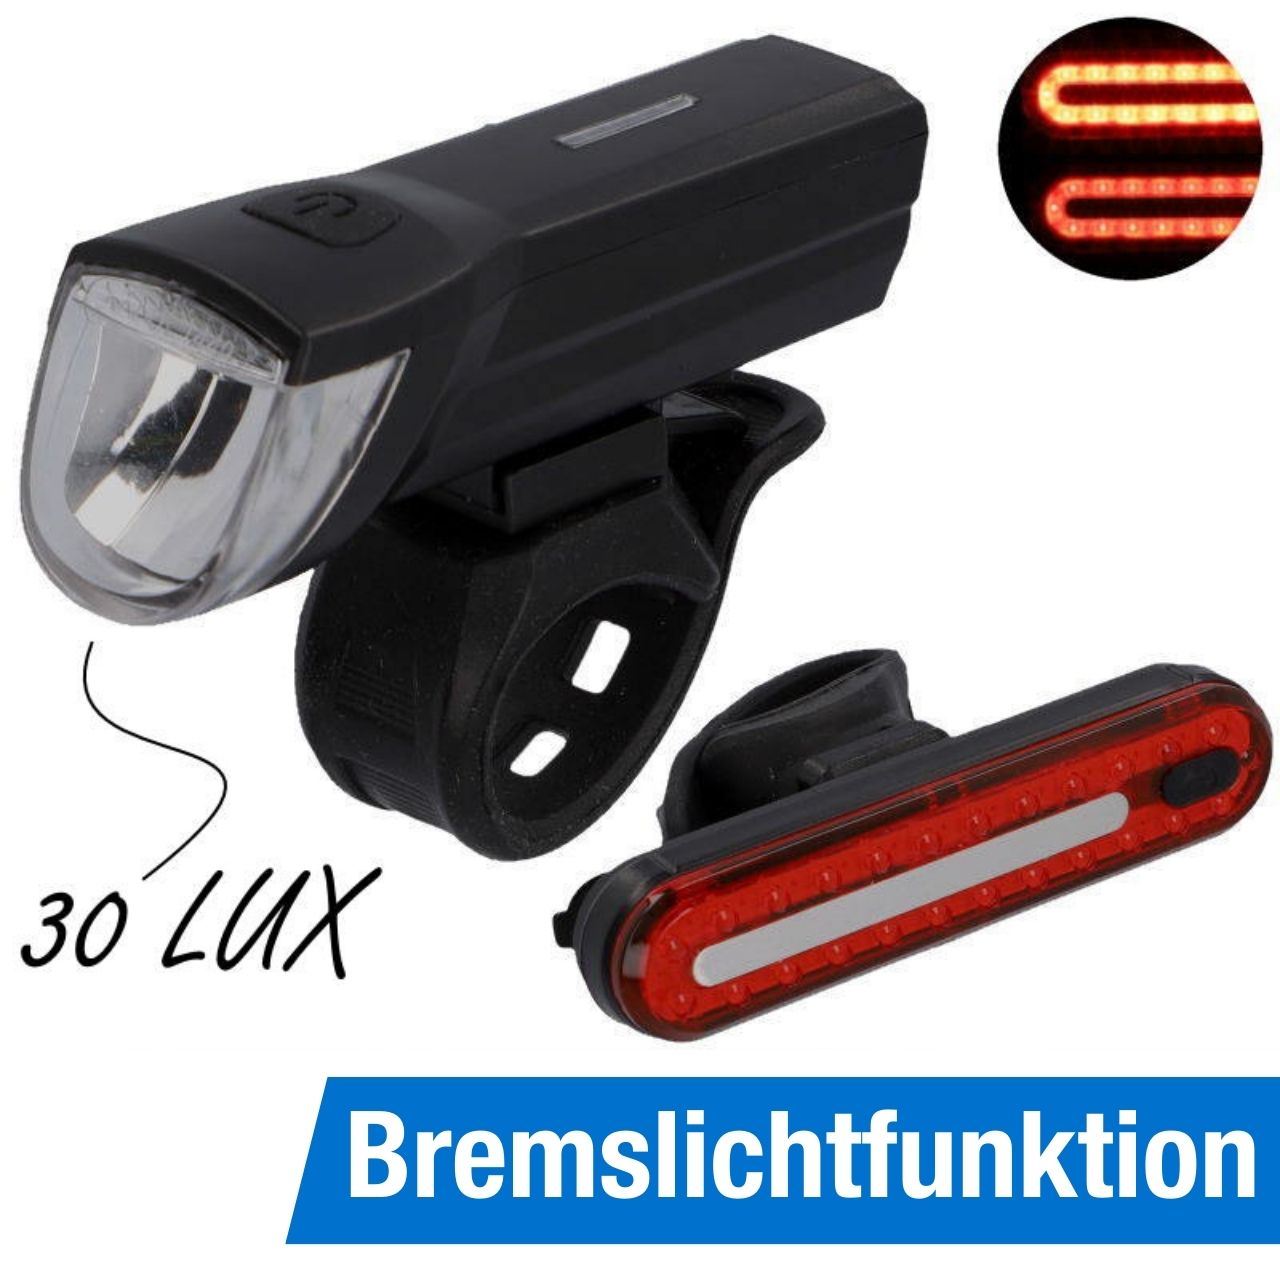 FISCHER Akku-USB-LED Beleuchtungsset 30 Lux inkl. Bremslicht Stableuchte, Beleuchtungsset, Beleuchtung (Akku & Batterie), Beleuchtung, Fahrradzubehör